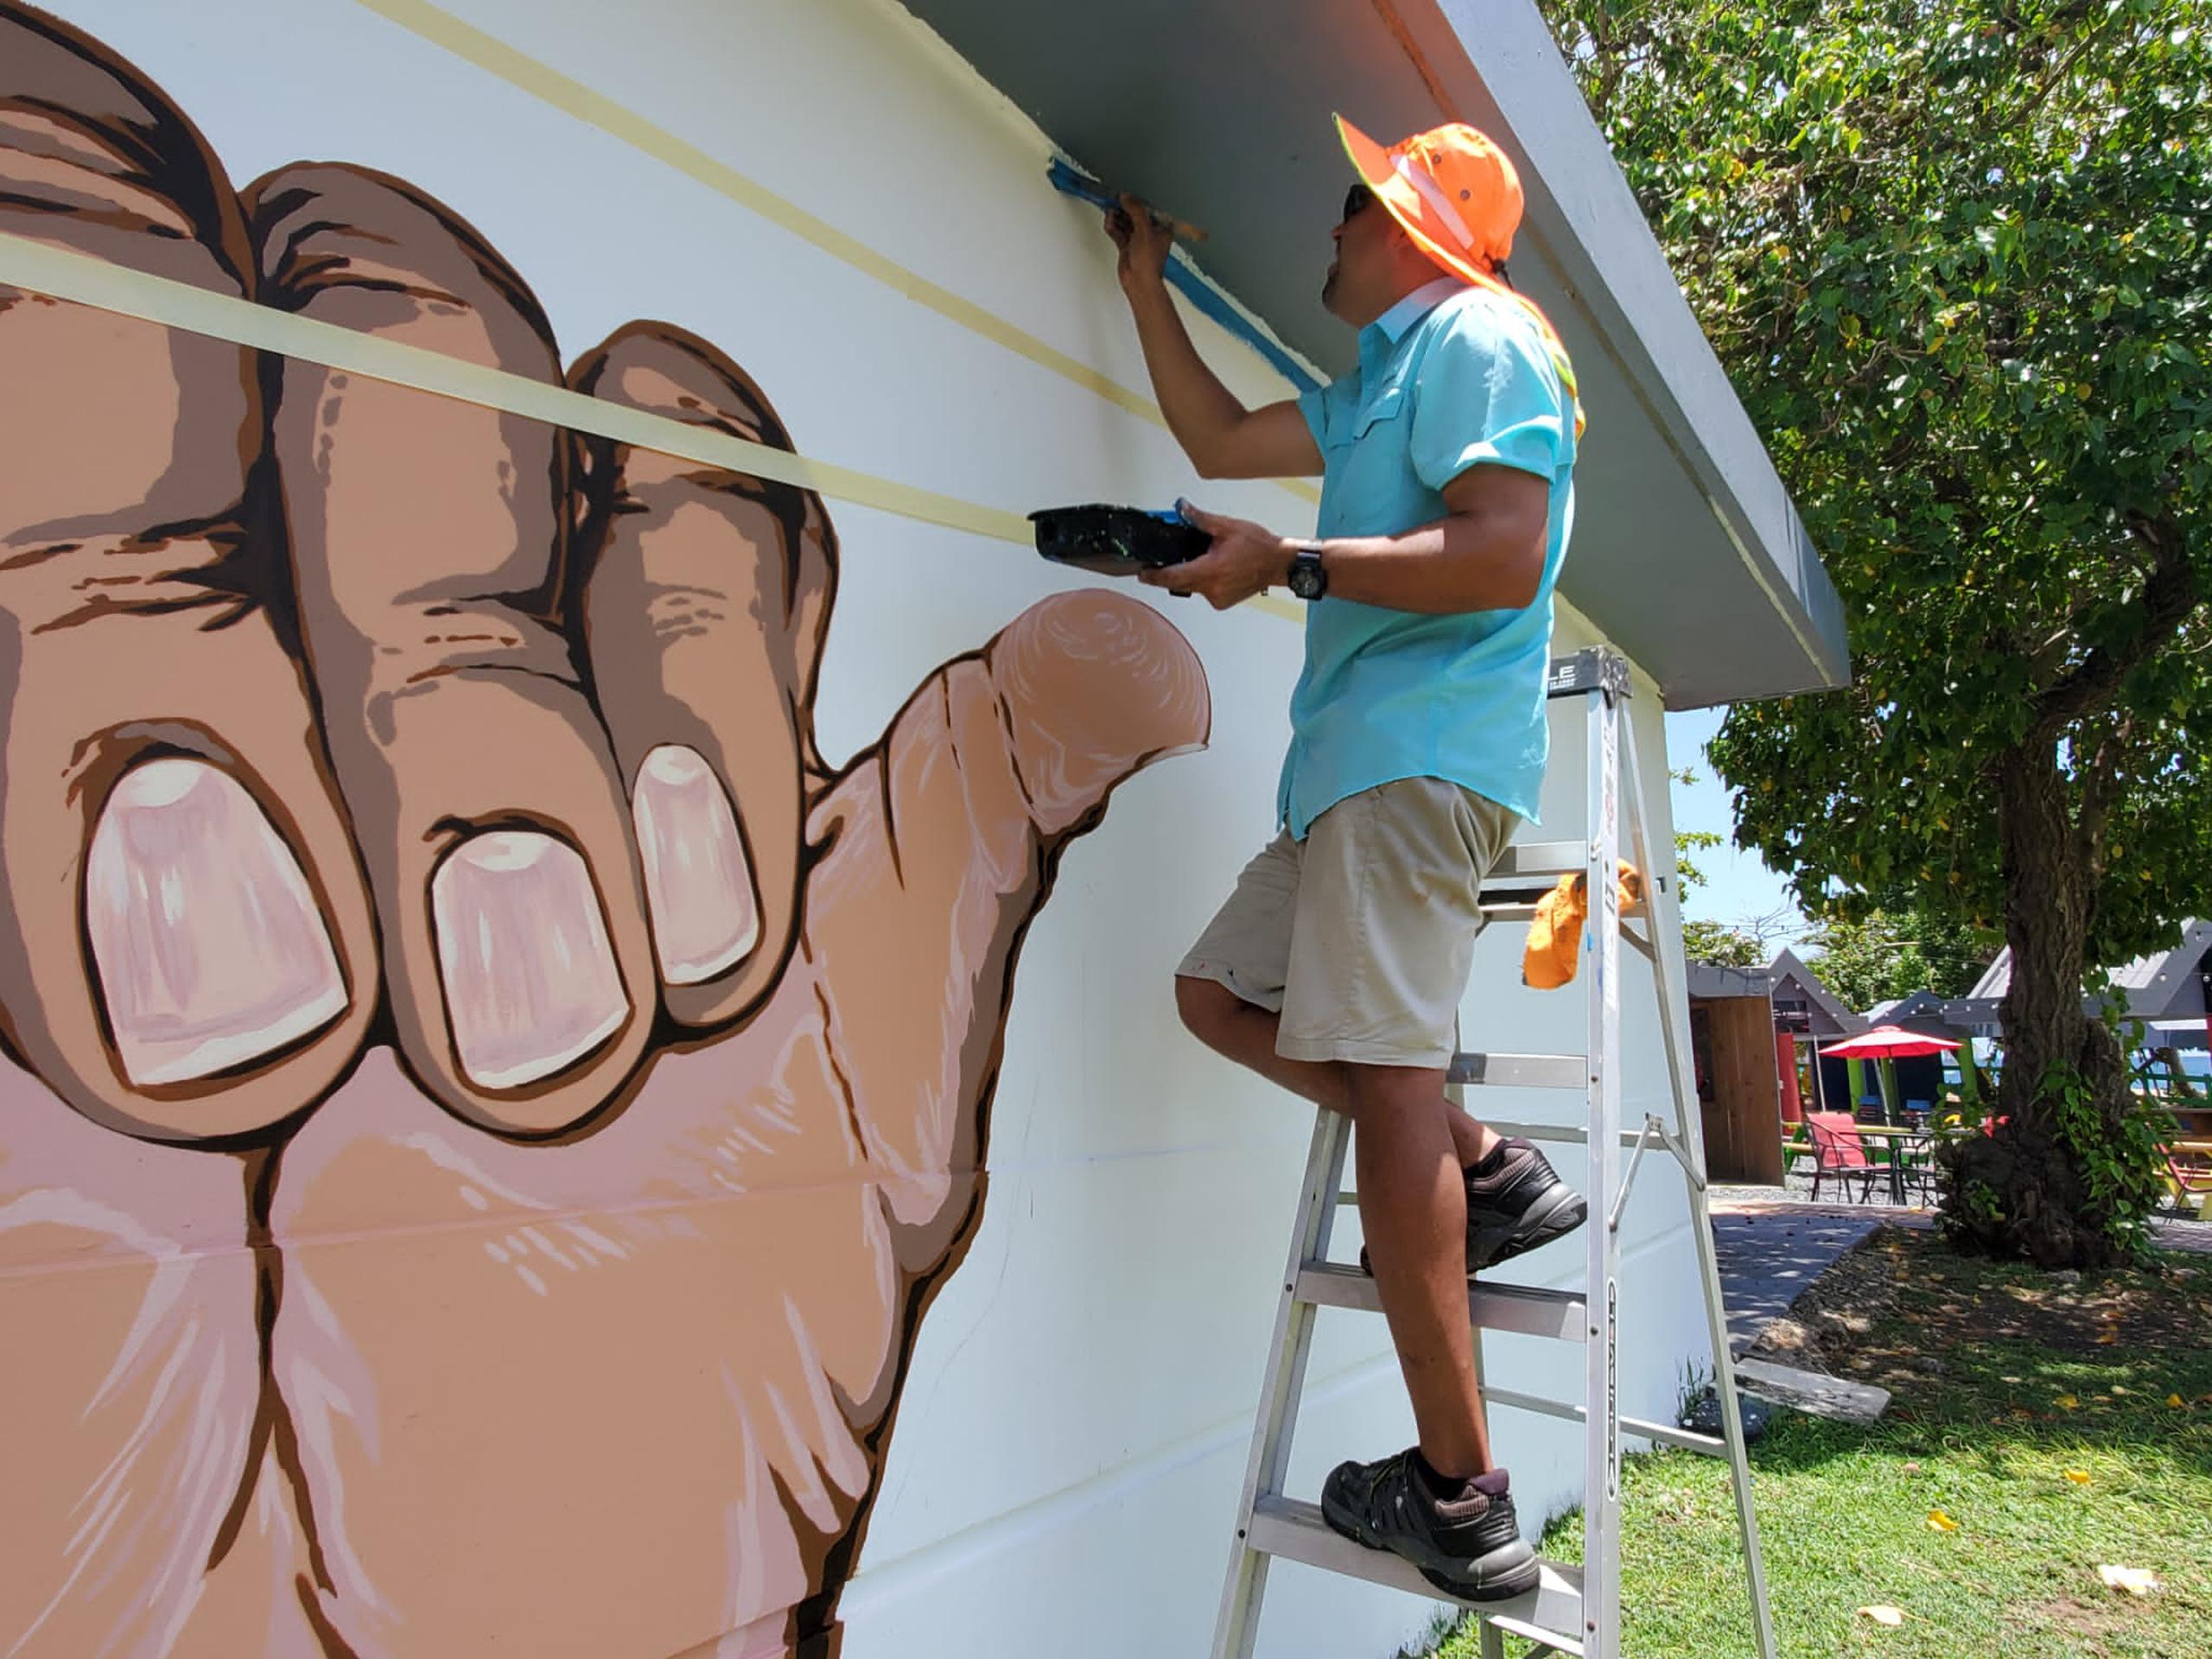 El artista Luis Galarza, quien realizó el mural, ubicado en la zona de Peñón Brusi
en Camuy, ha realizado otras obras en el municipio.